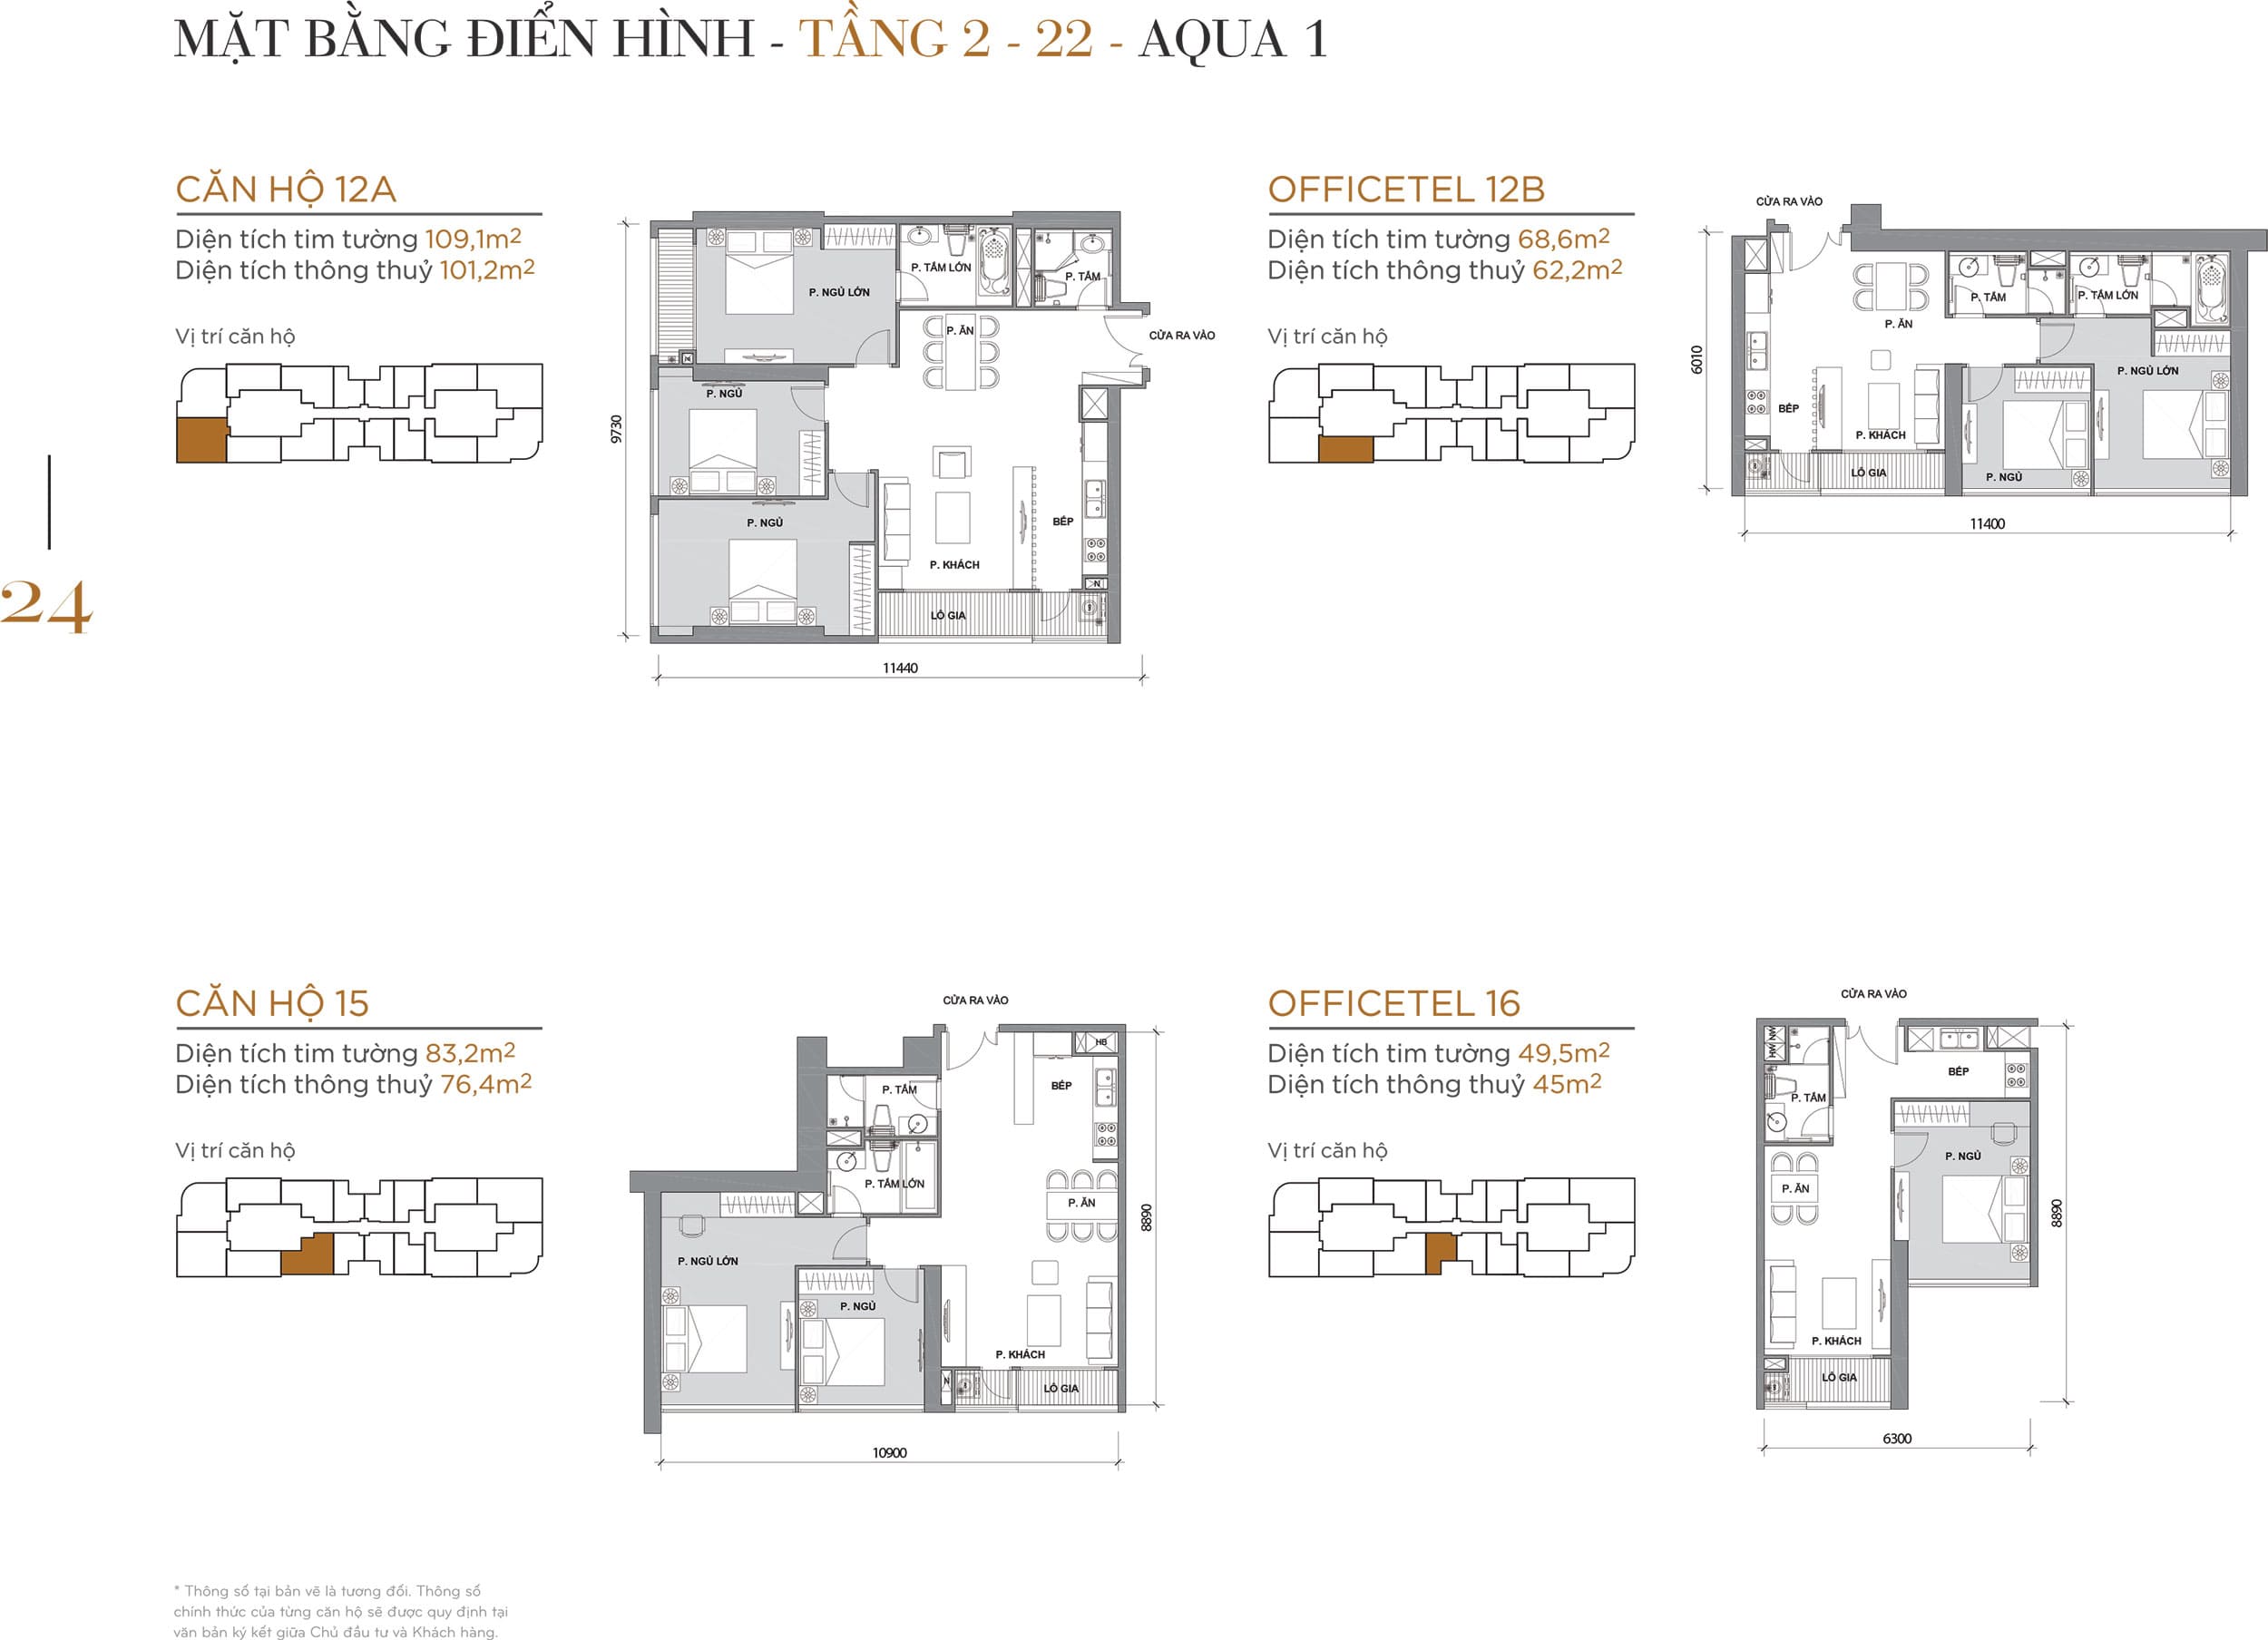 Layout thiết kế điển hình Tầng 2 đến Tầng 22 Tòa Aqua 1 loại căn hộ 12A, Officetel 12B, căn hộ 15, Officetel 16.